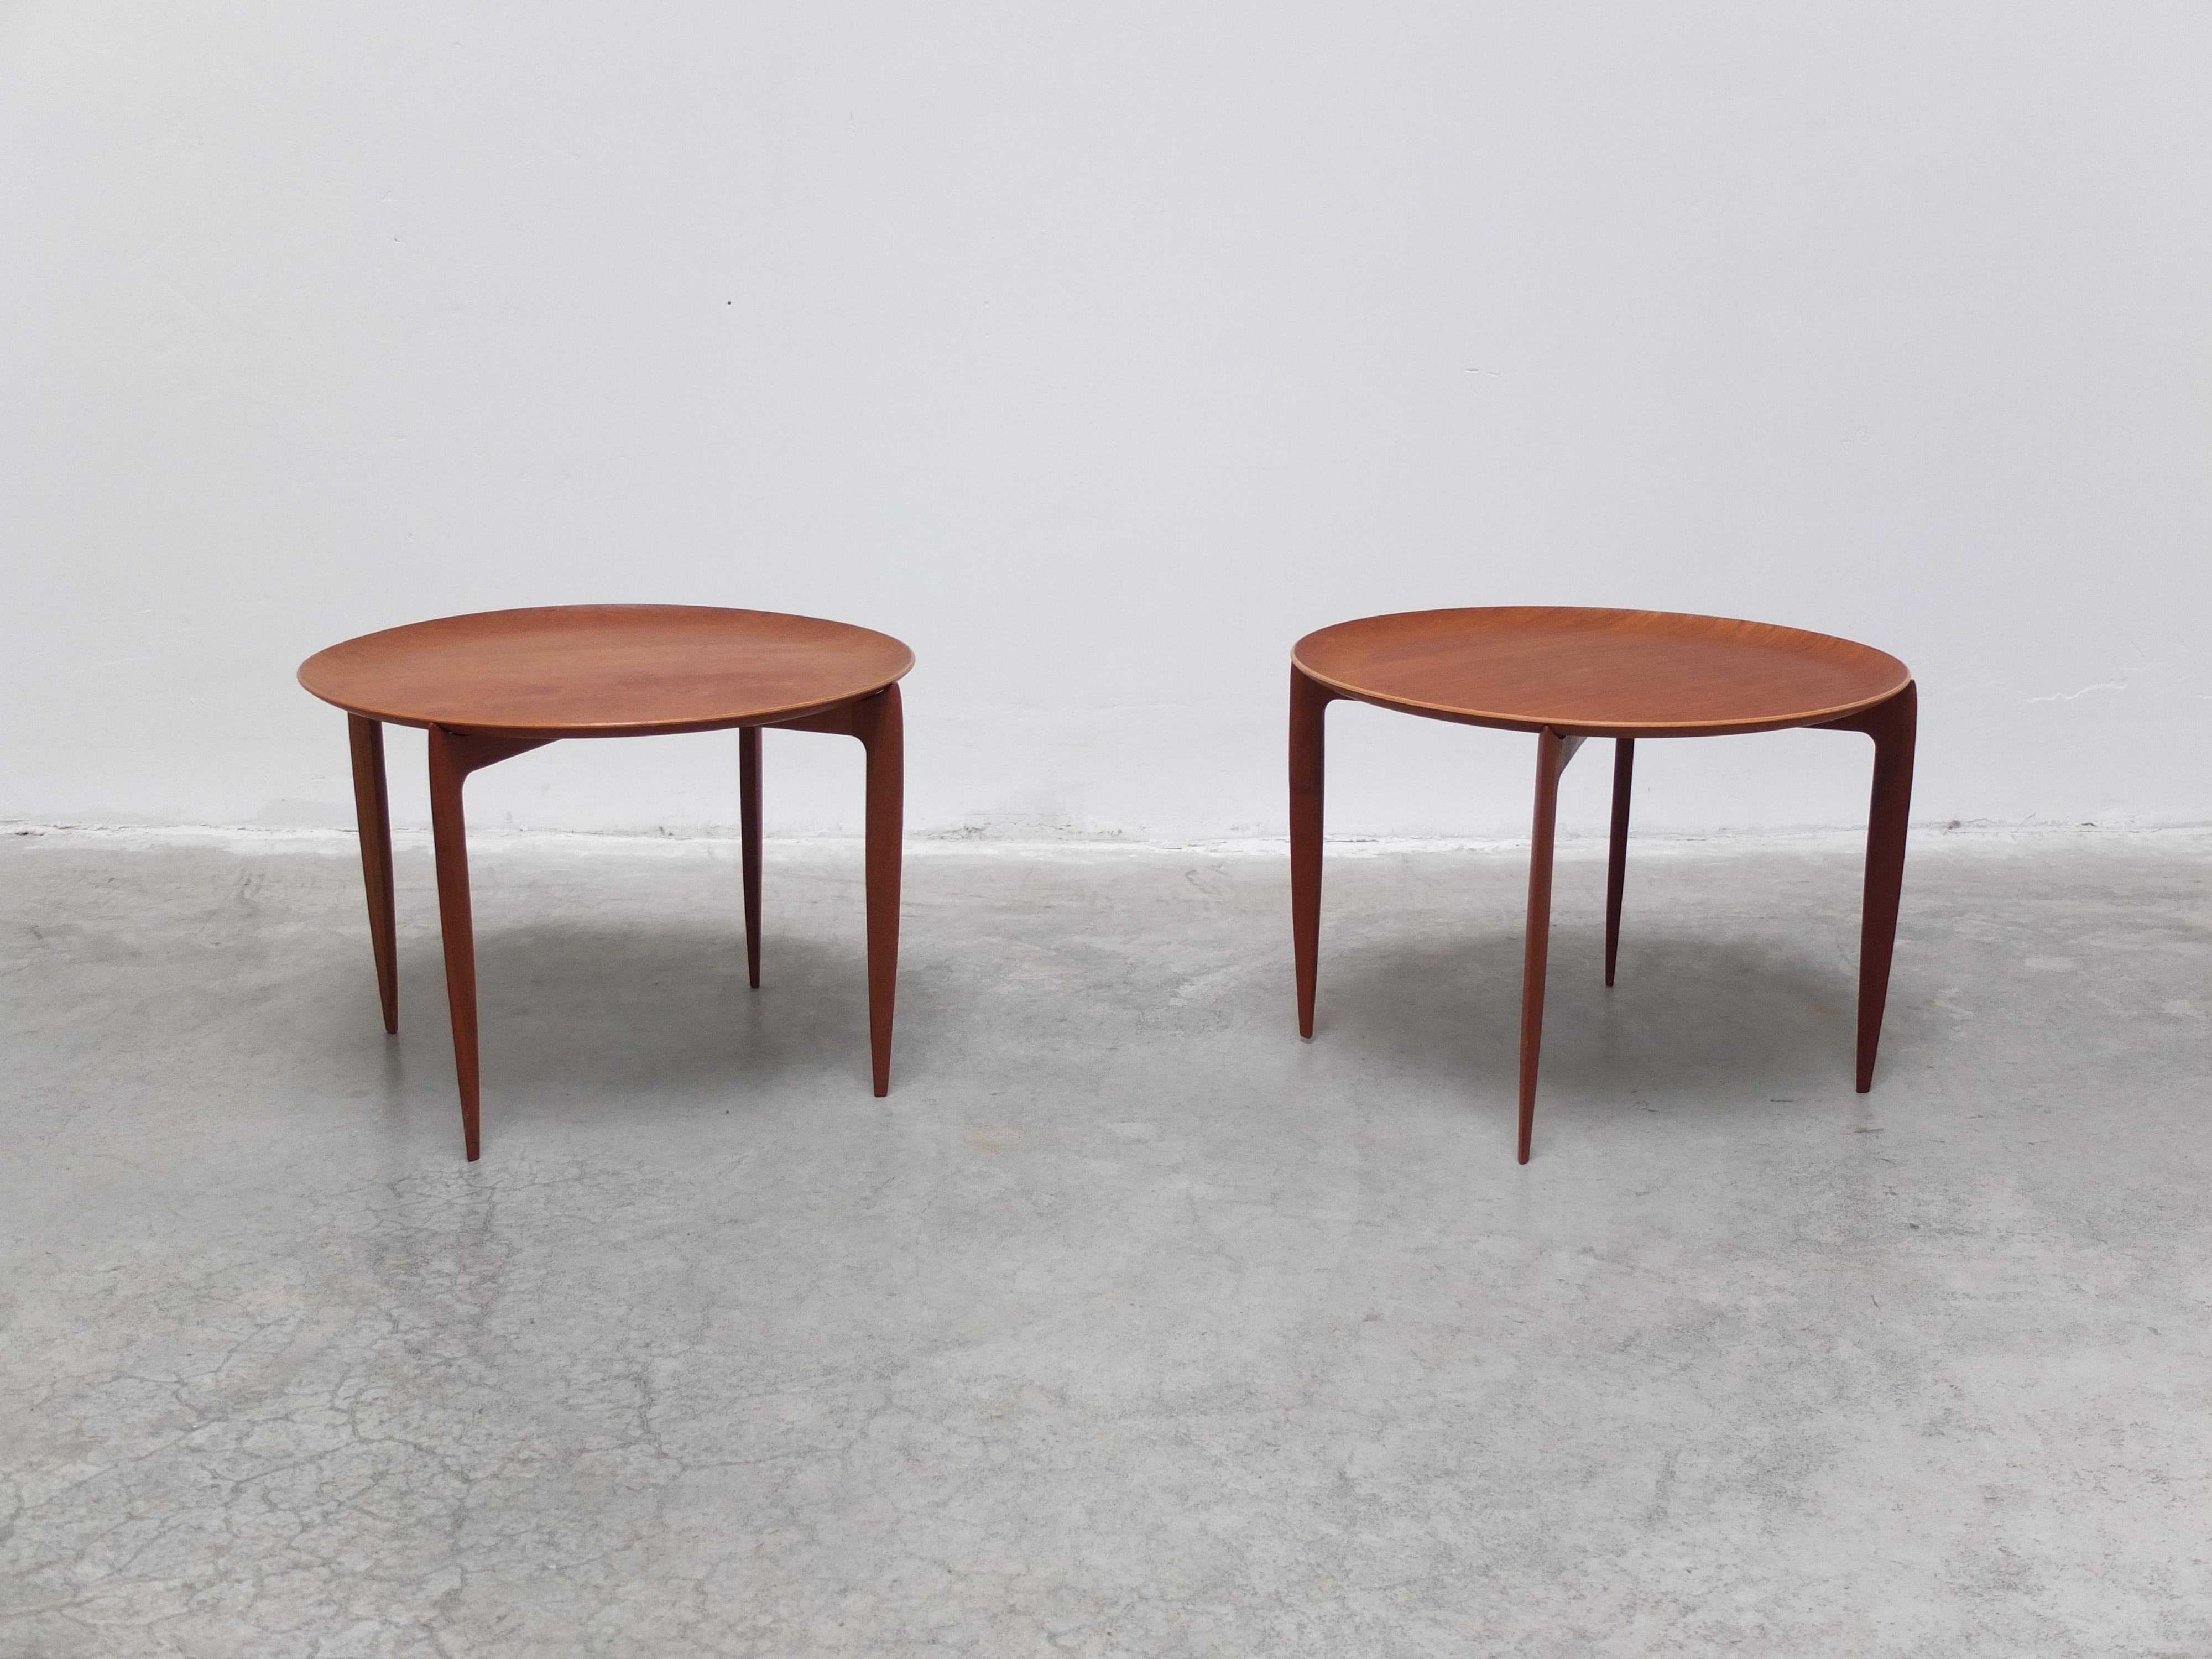 Rare paire originale de tables-plateaux modèle '4508' conçues par Hansen et Svend Aage Willumsen pour Fritz Hansen en 1958. Magnifique version précoce entièrement exécutée en teck et produite au début des années 60. Ce design est très raffiné avec